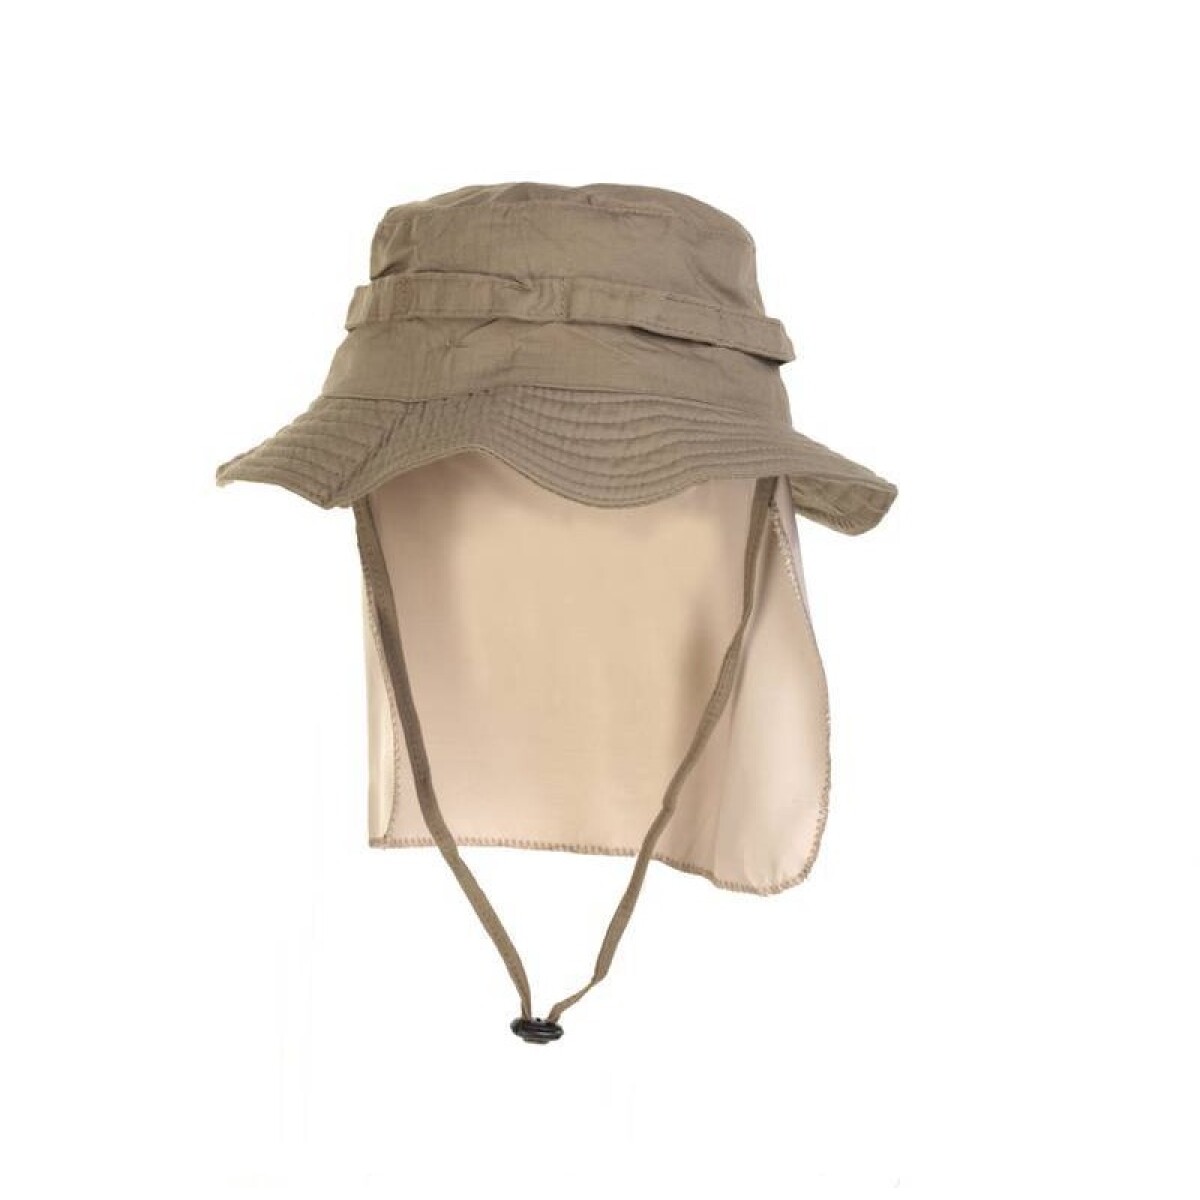 Sombrero Capelina de pescador con cubre nuca Protección UV50+ - Fox Boy - Caqui 